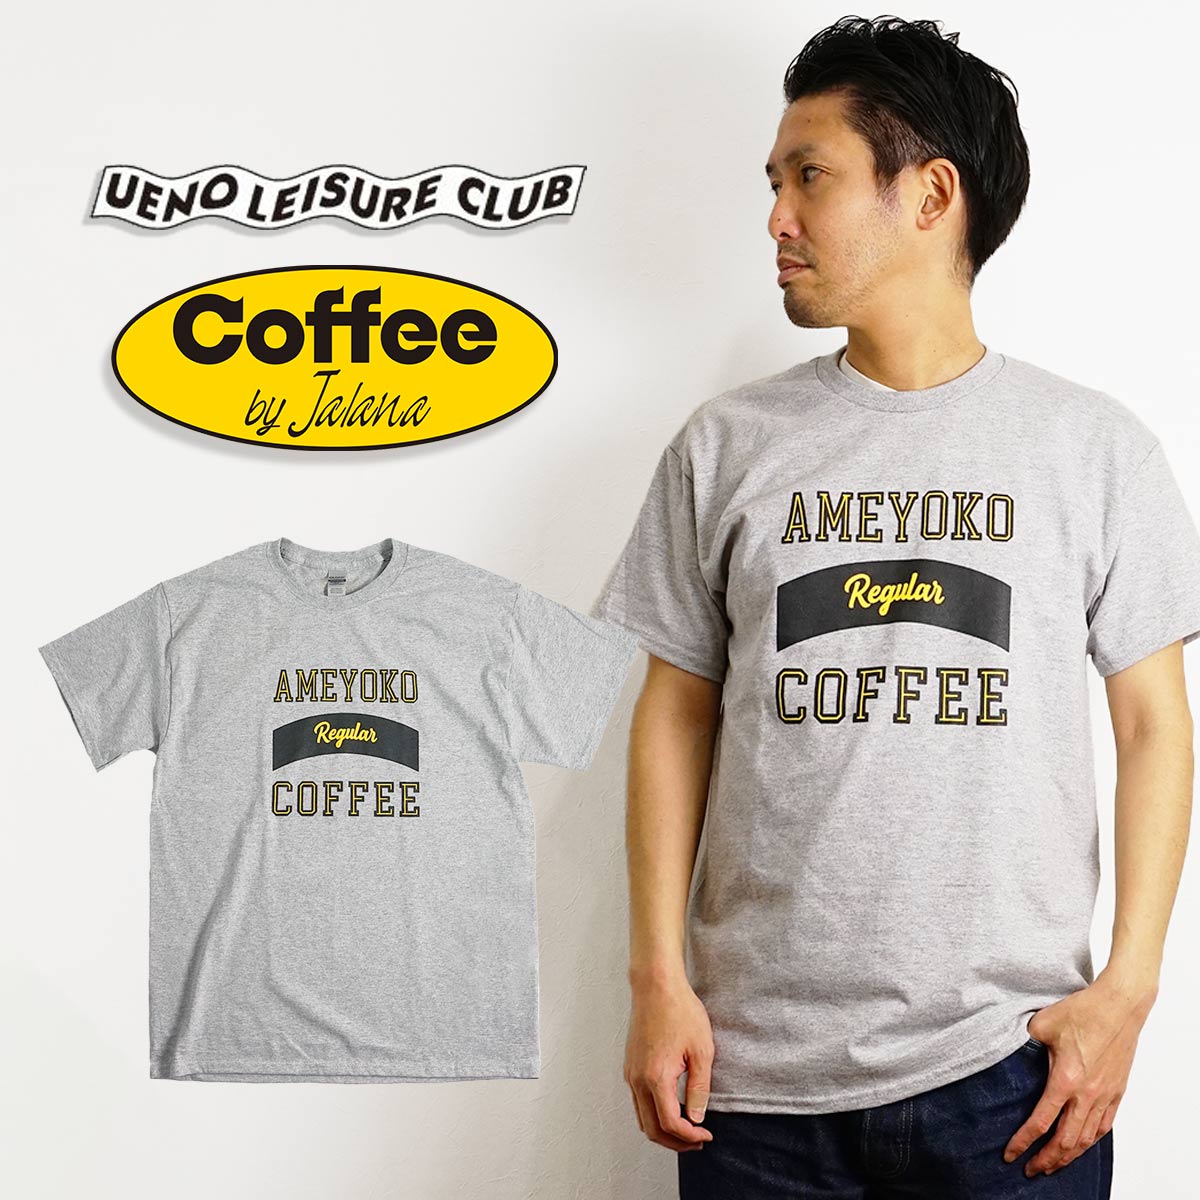 【クーポン配布中】ウエノレジャークラブ UENO LEISURE CLUB Coffee by Jalana AMEYOKO Regular COFFEE 半袖 Tシャツ（メンズ レディース ユニセックス M-XXL ギルダン)